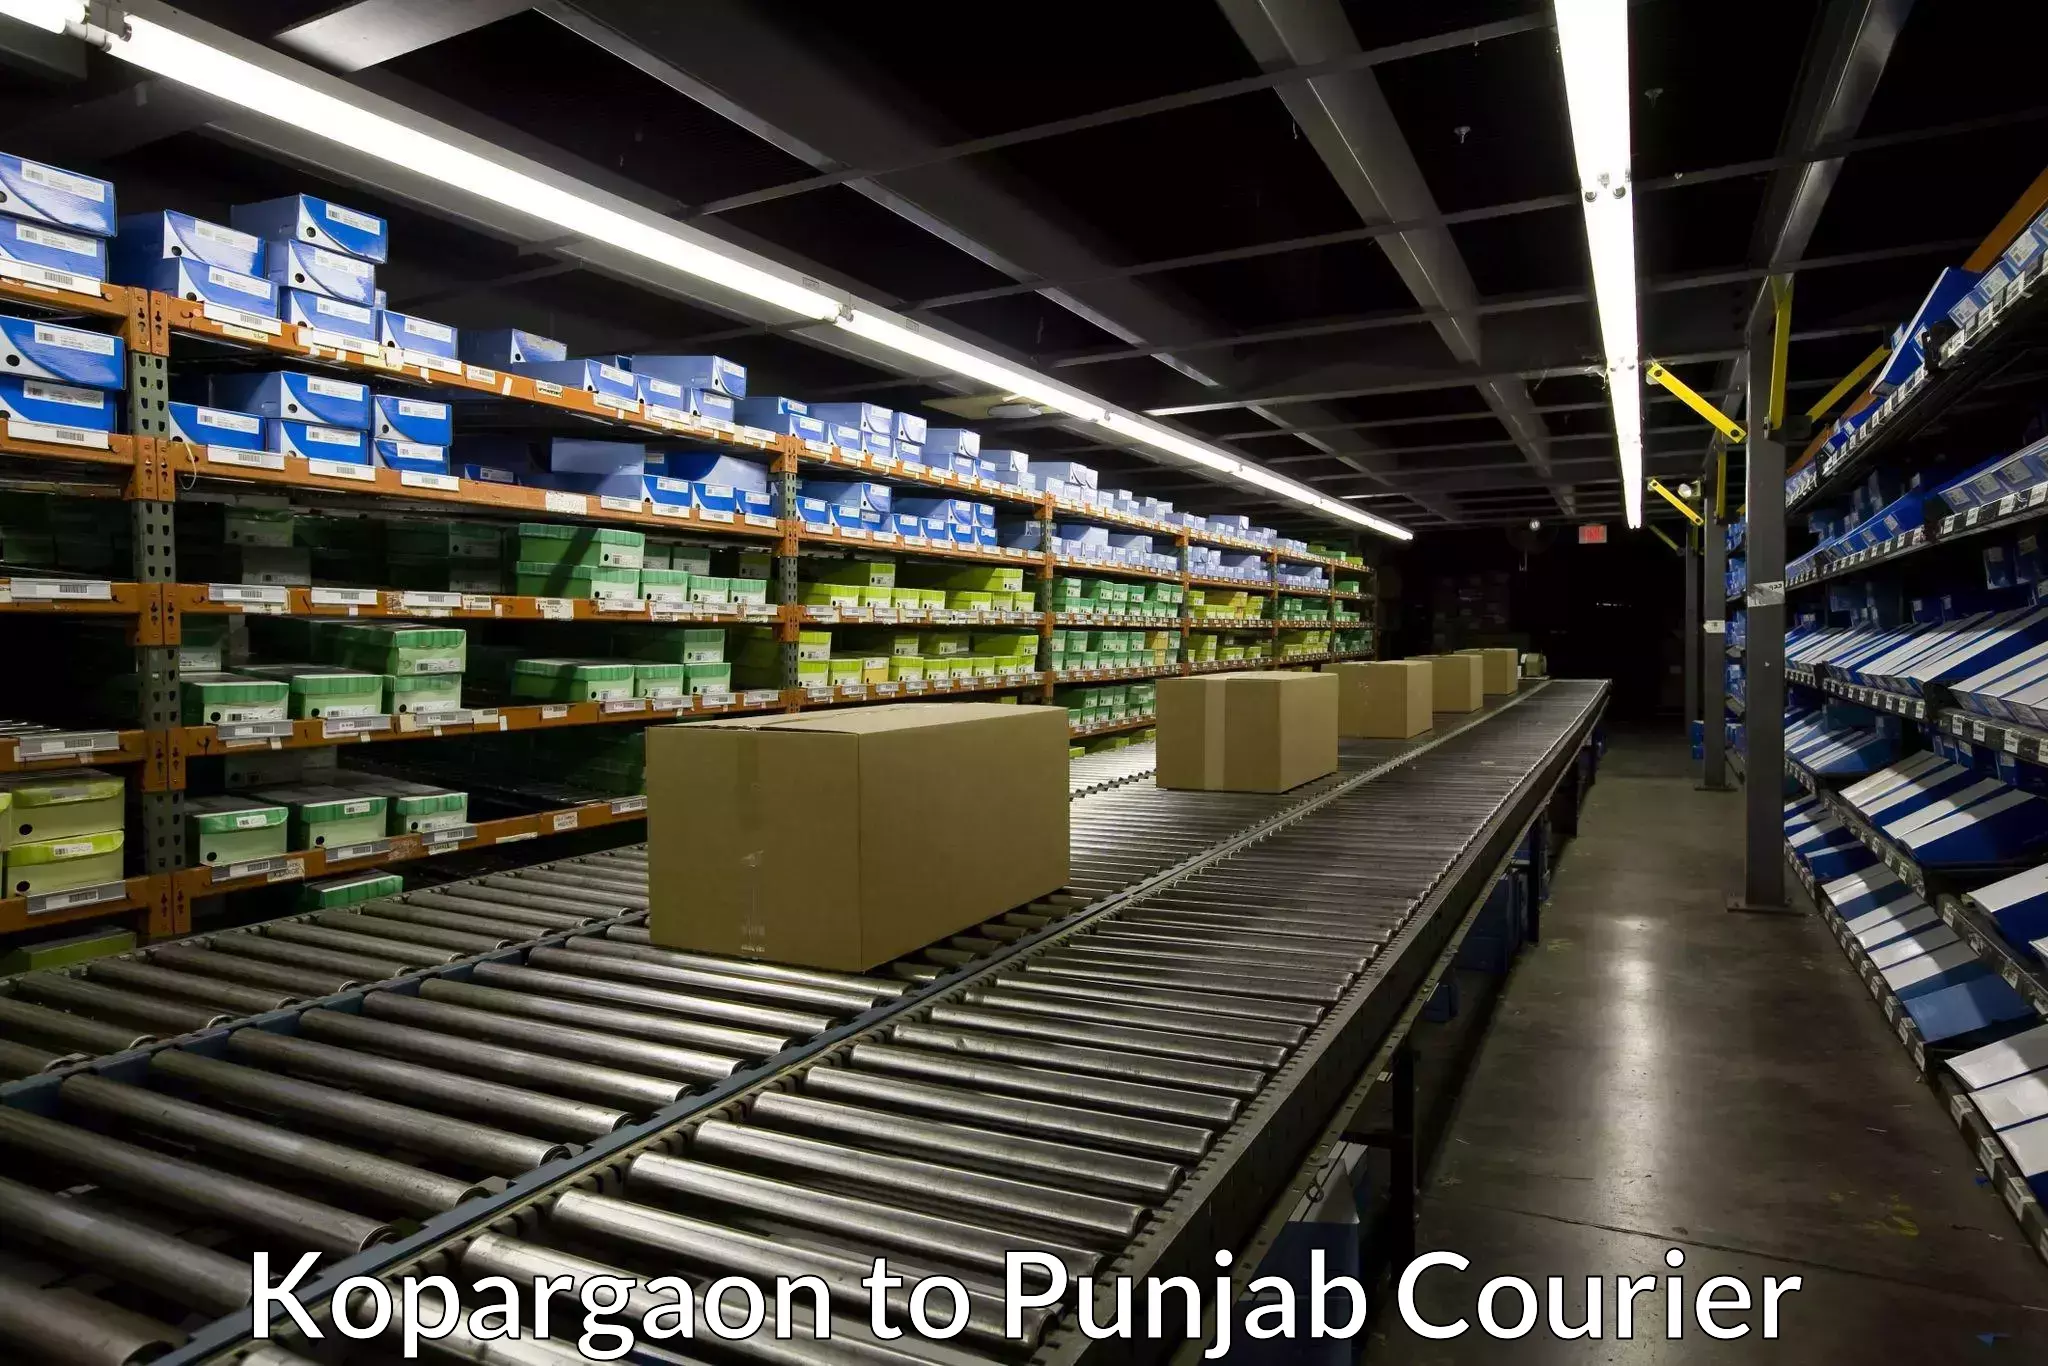 Flexible parcel services Kopargaon to Punjab